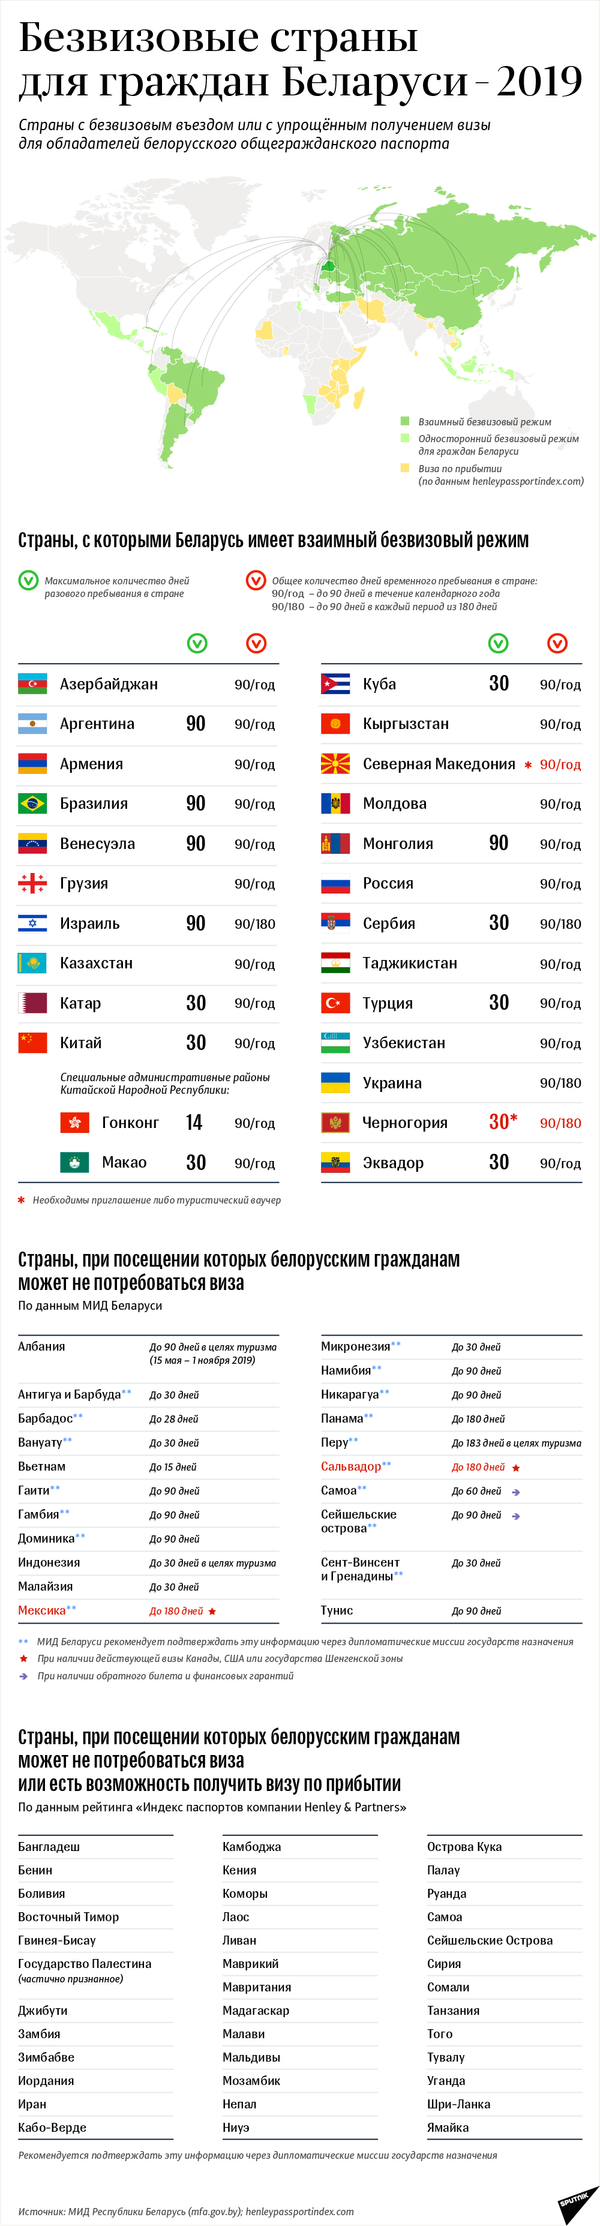 Безвизовые страны для граждан Беларуси – 2019 | Инфографика sputnik.by - Sputnik Беларусь